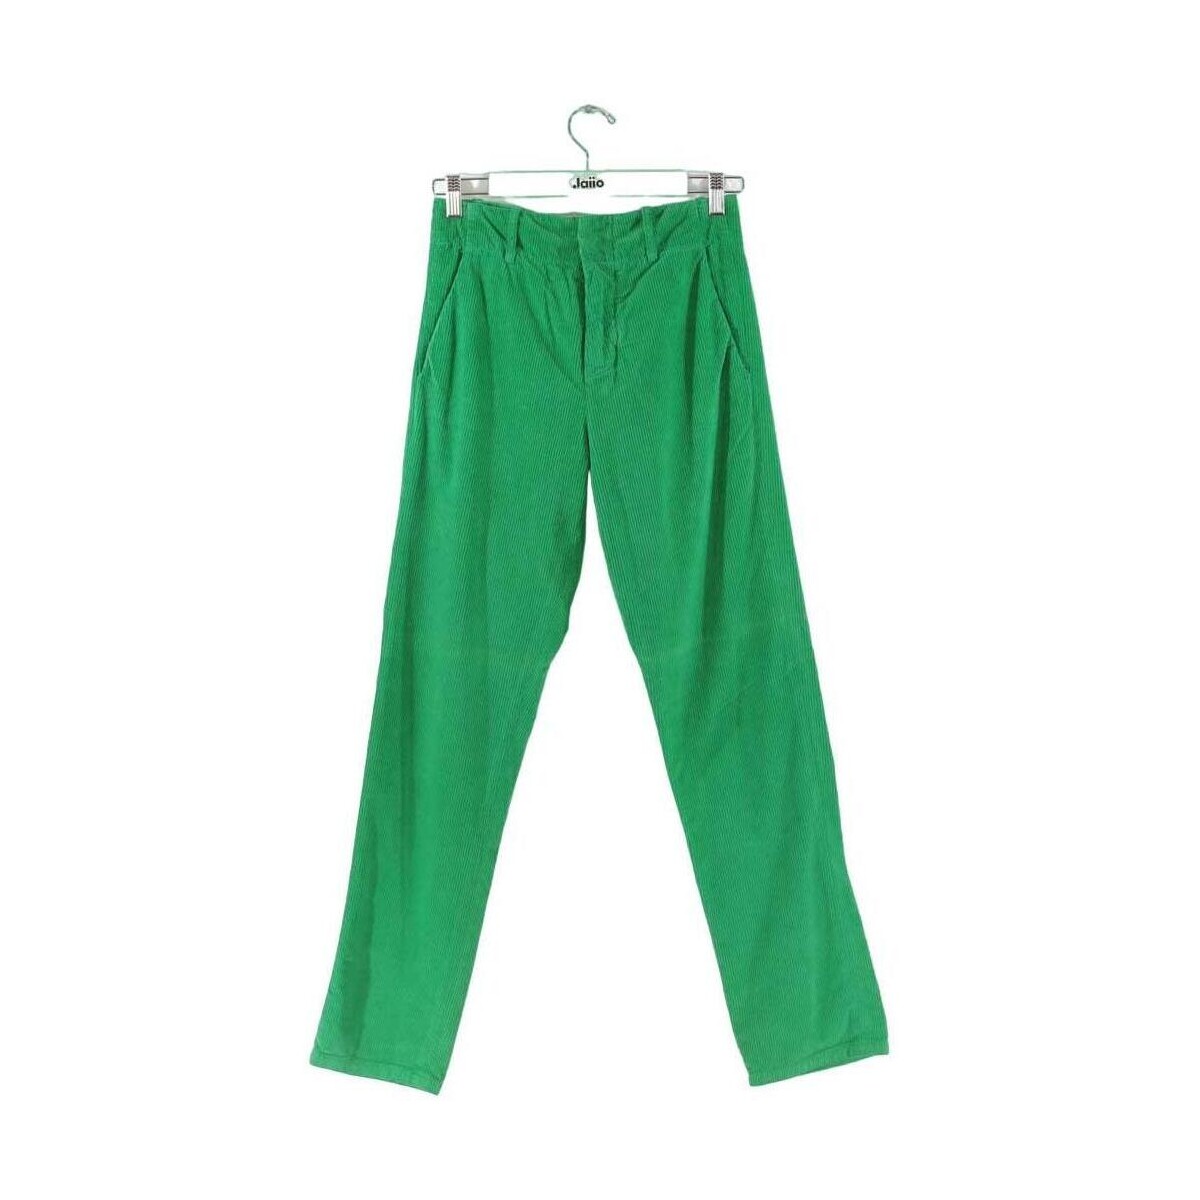 Vêtements Femme Pantalons Leon & Harper Pantalon droit en coton Vert